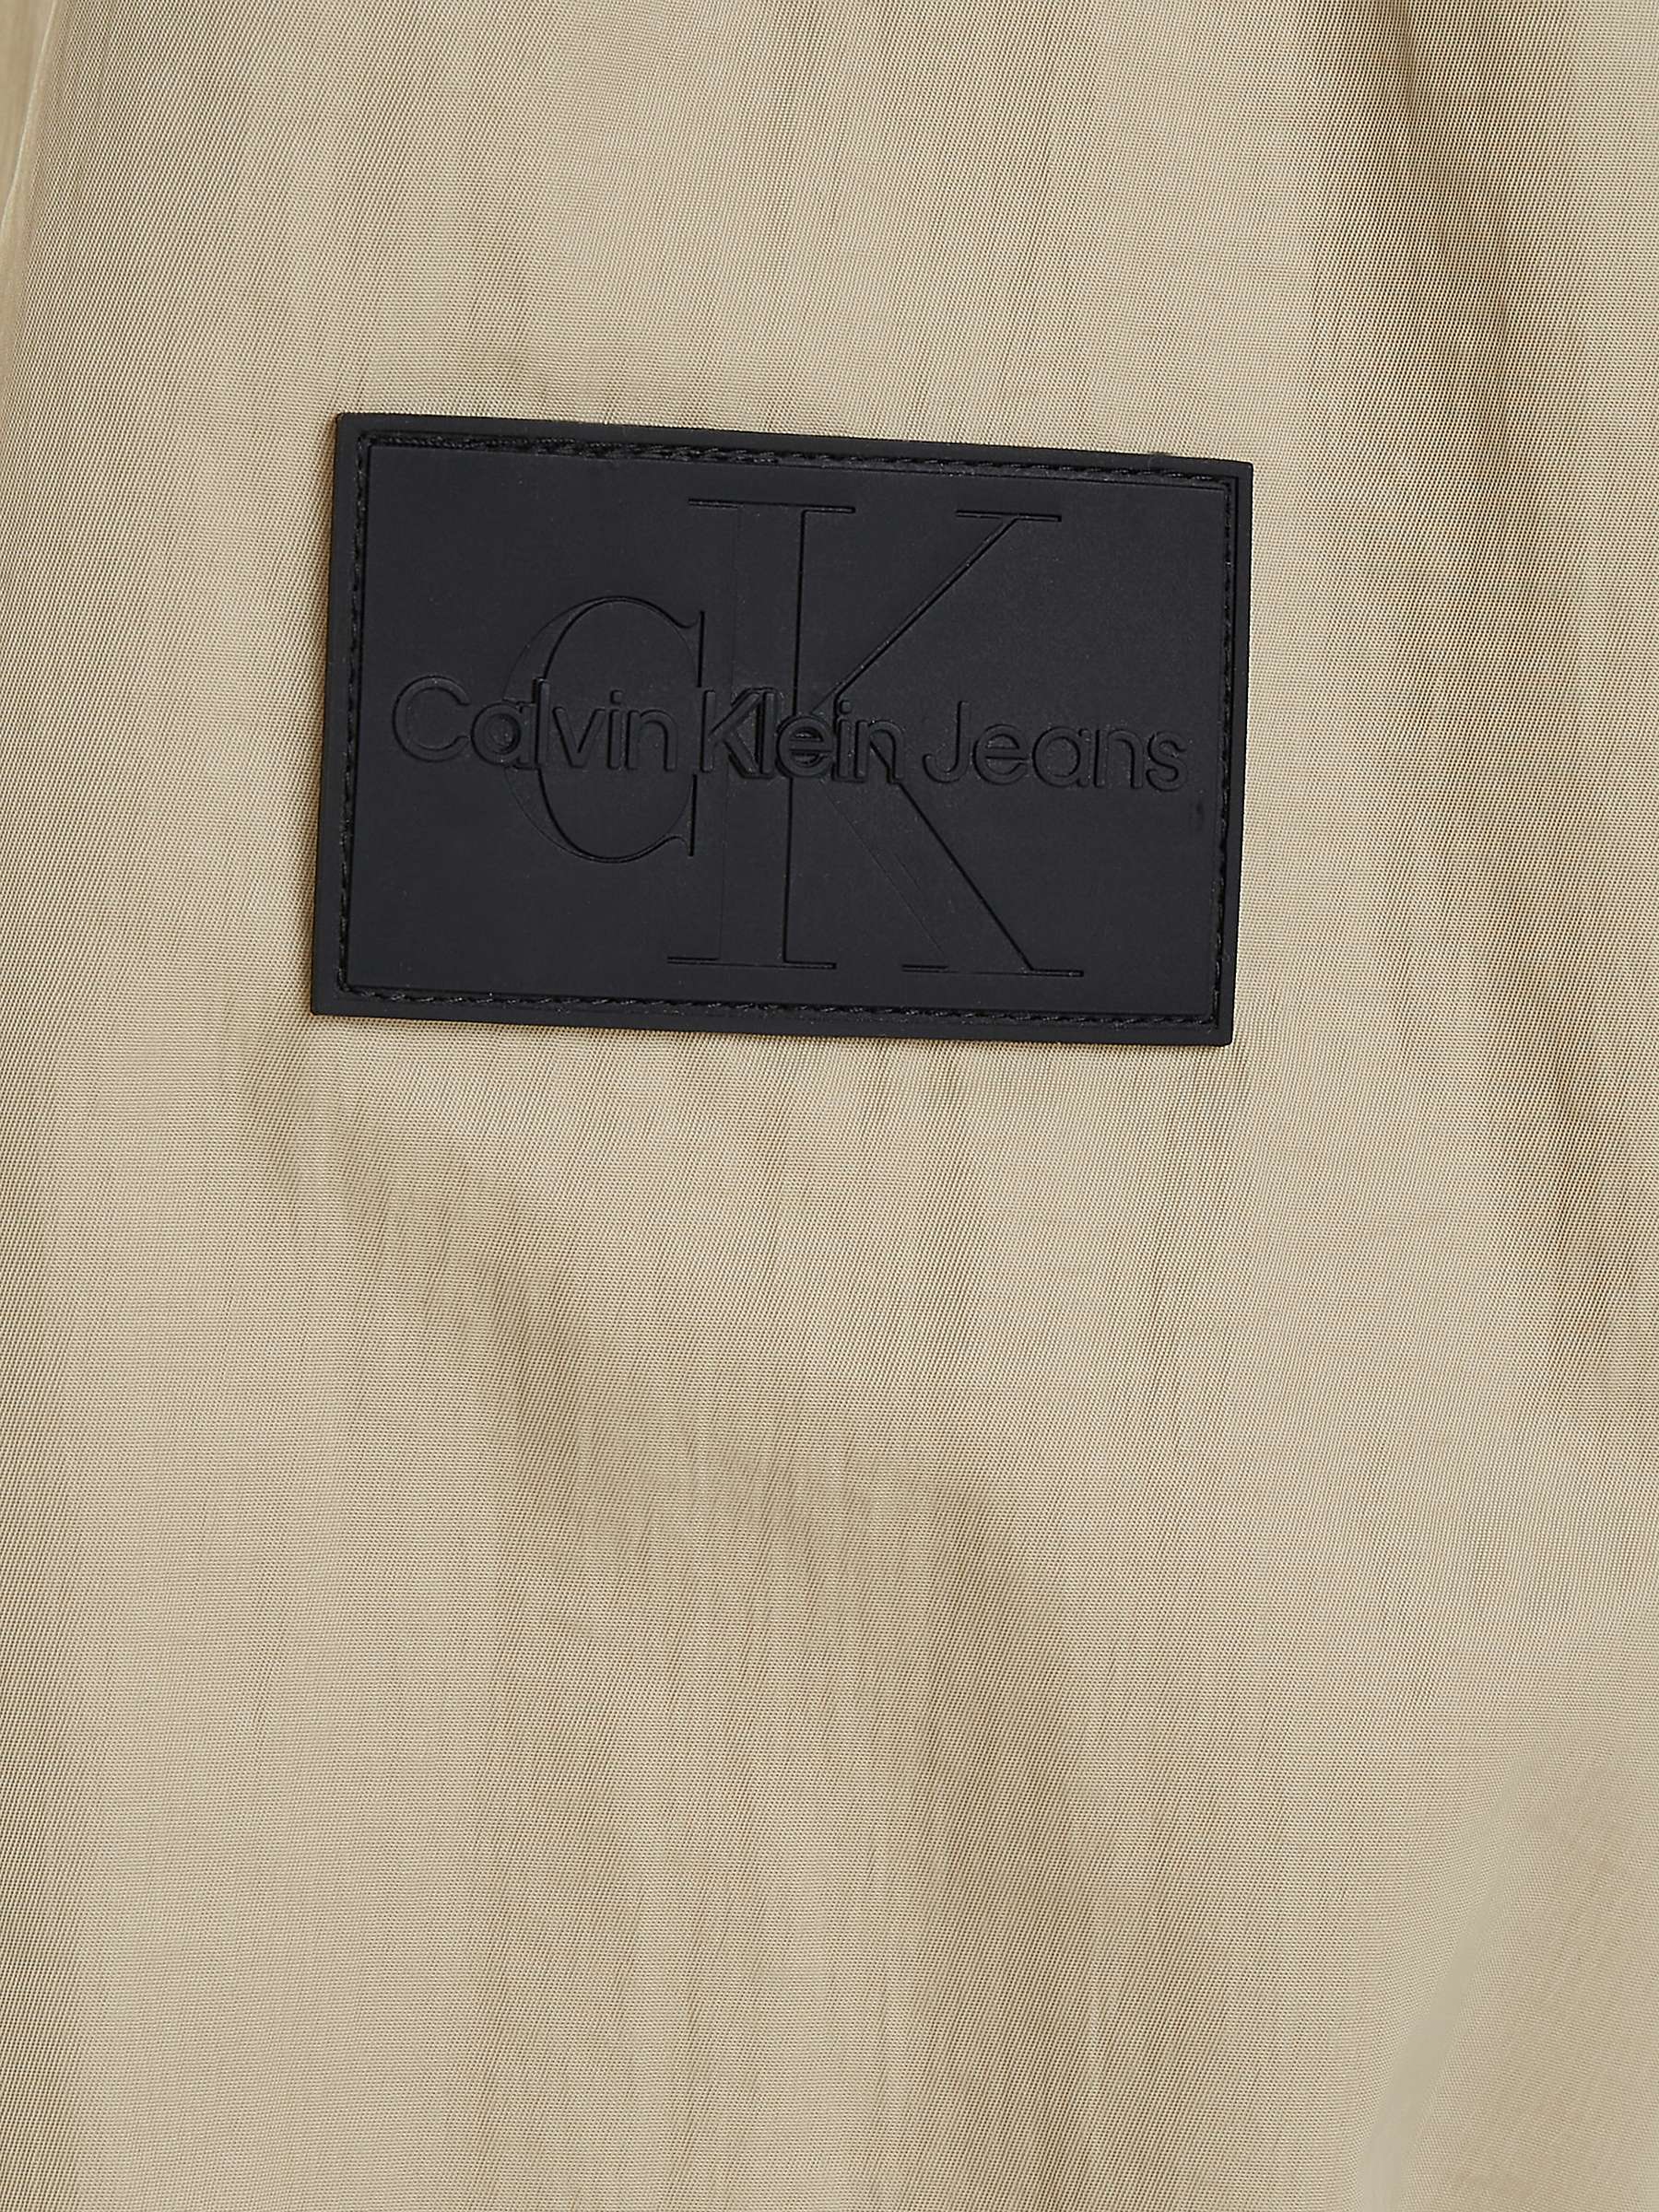 Buy Calvin Klein Jeans Seasonal Windbreaker Jacket, Taupe Online at johnlewis.com